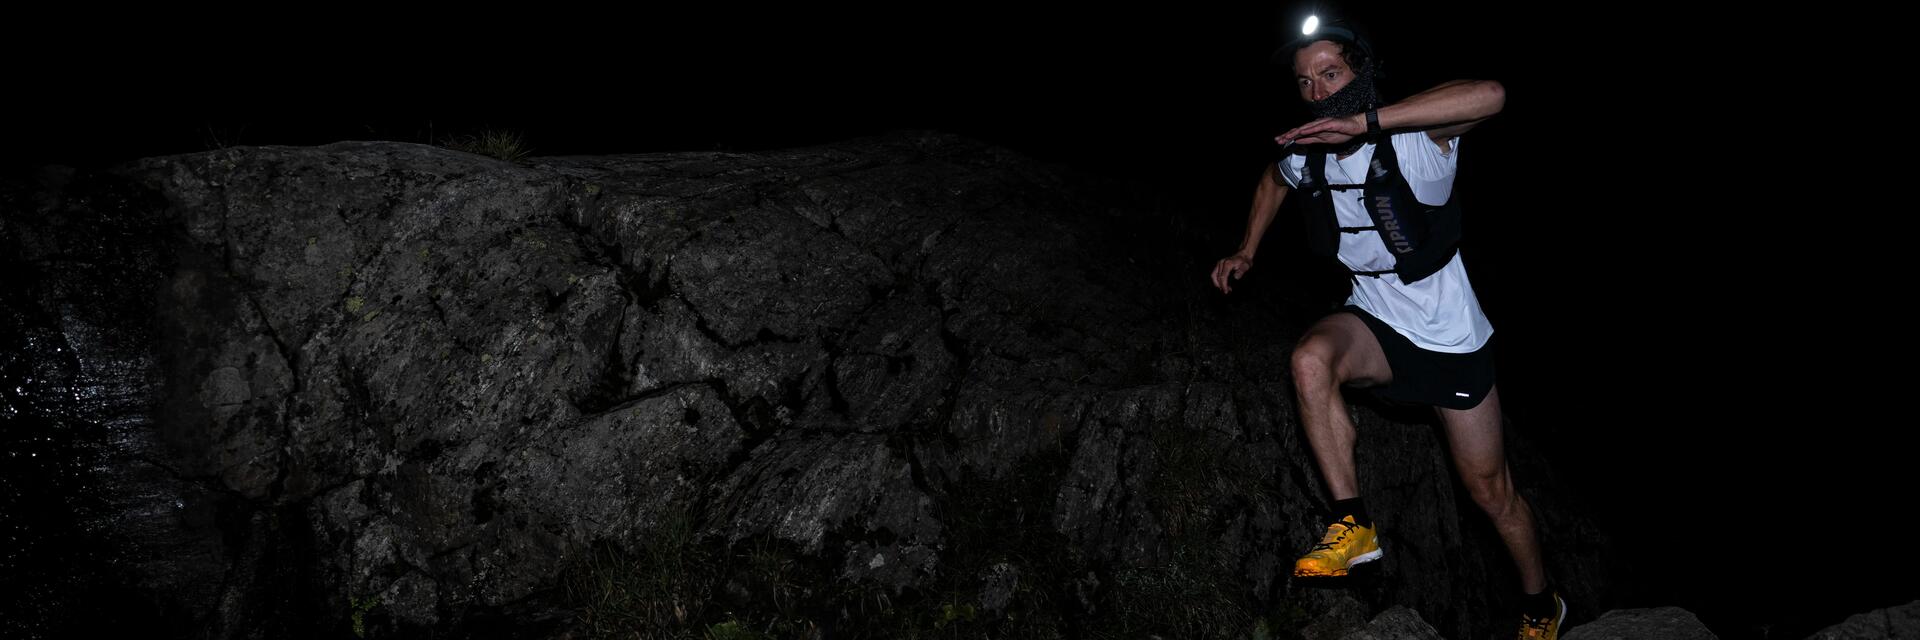 mężczyzna biegnący w nocy w kamizelce biegowej z latarką czołową na głowie